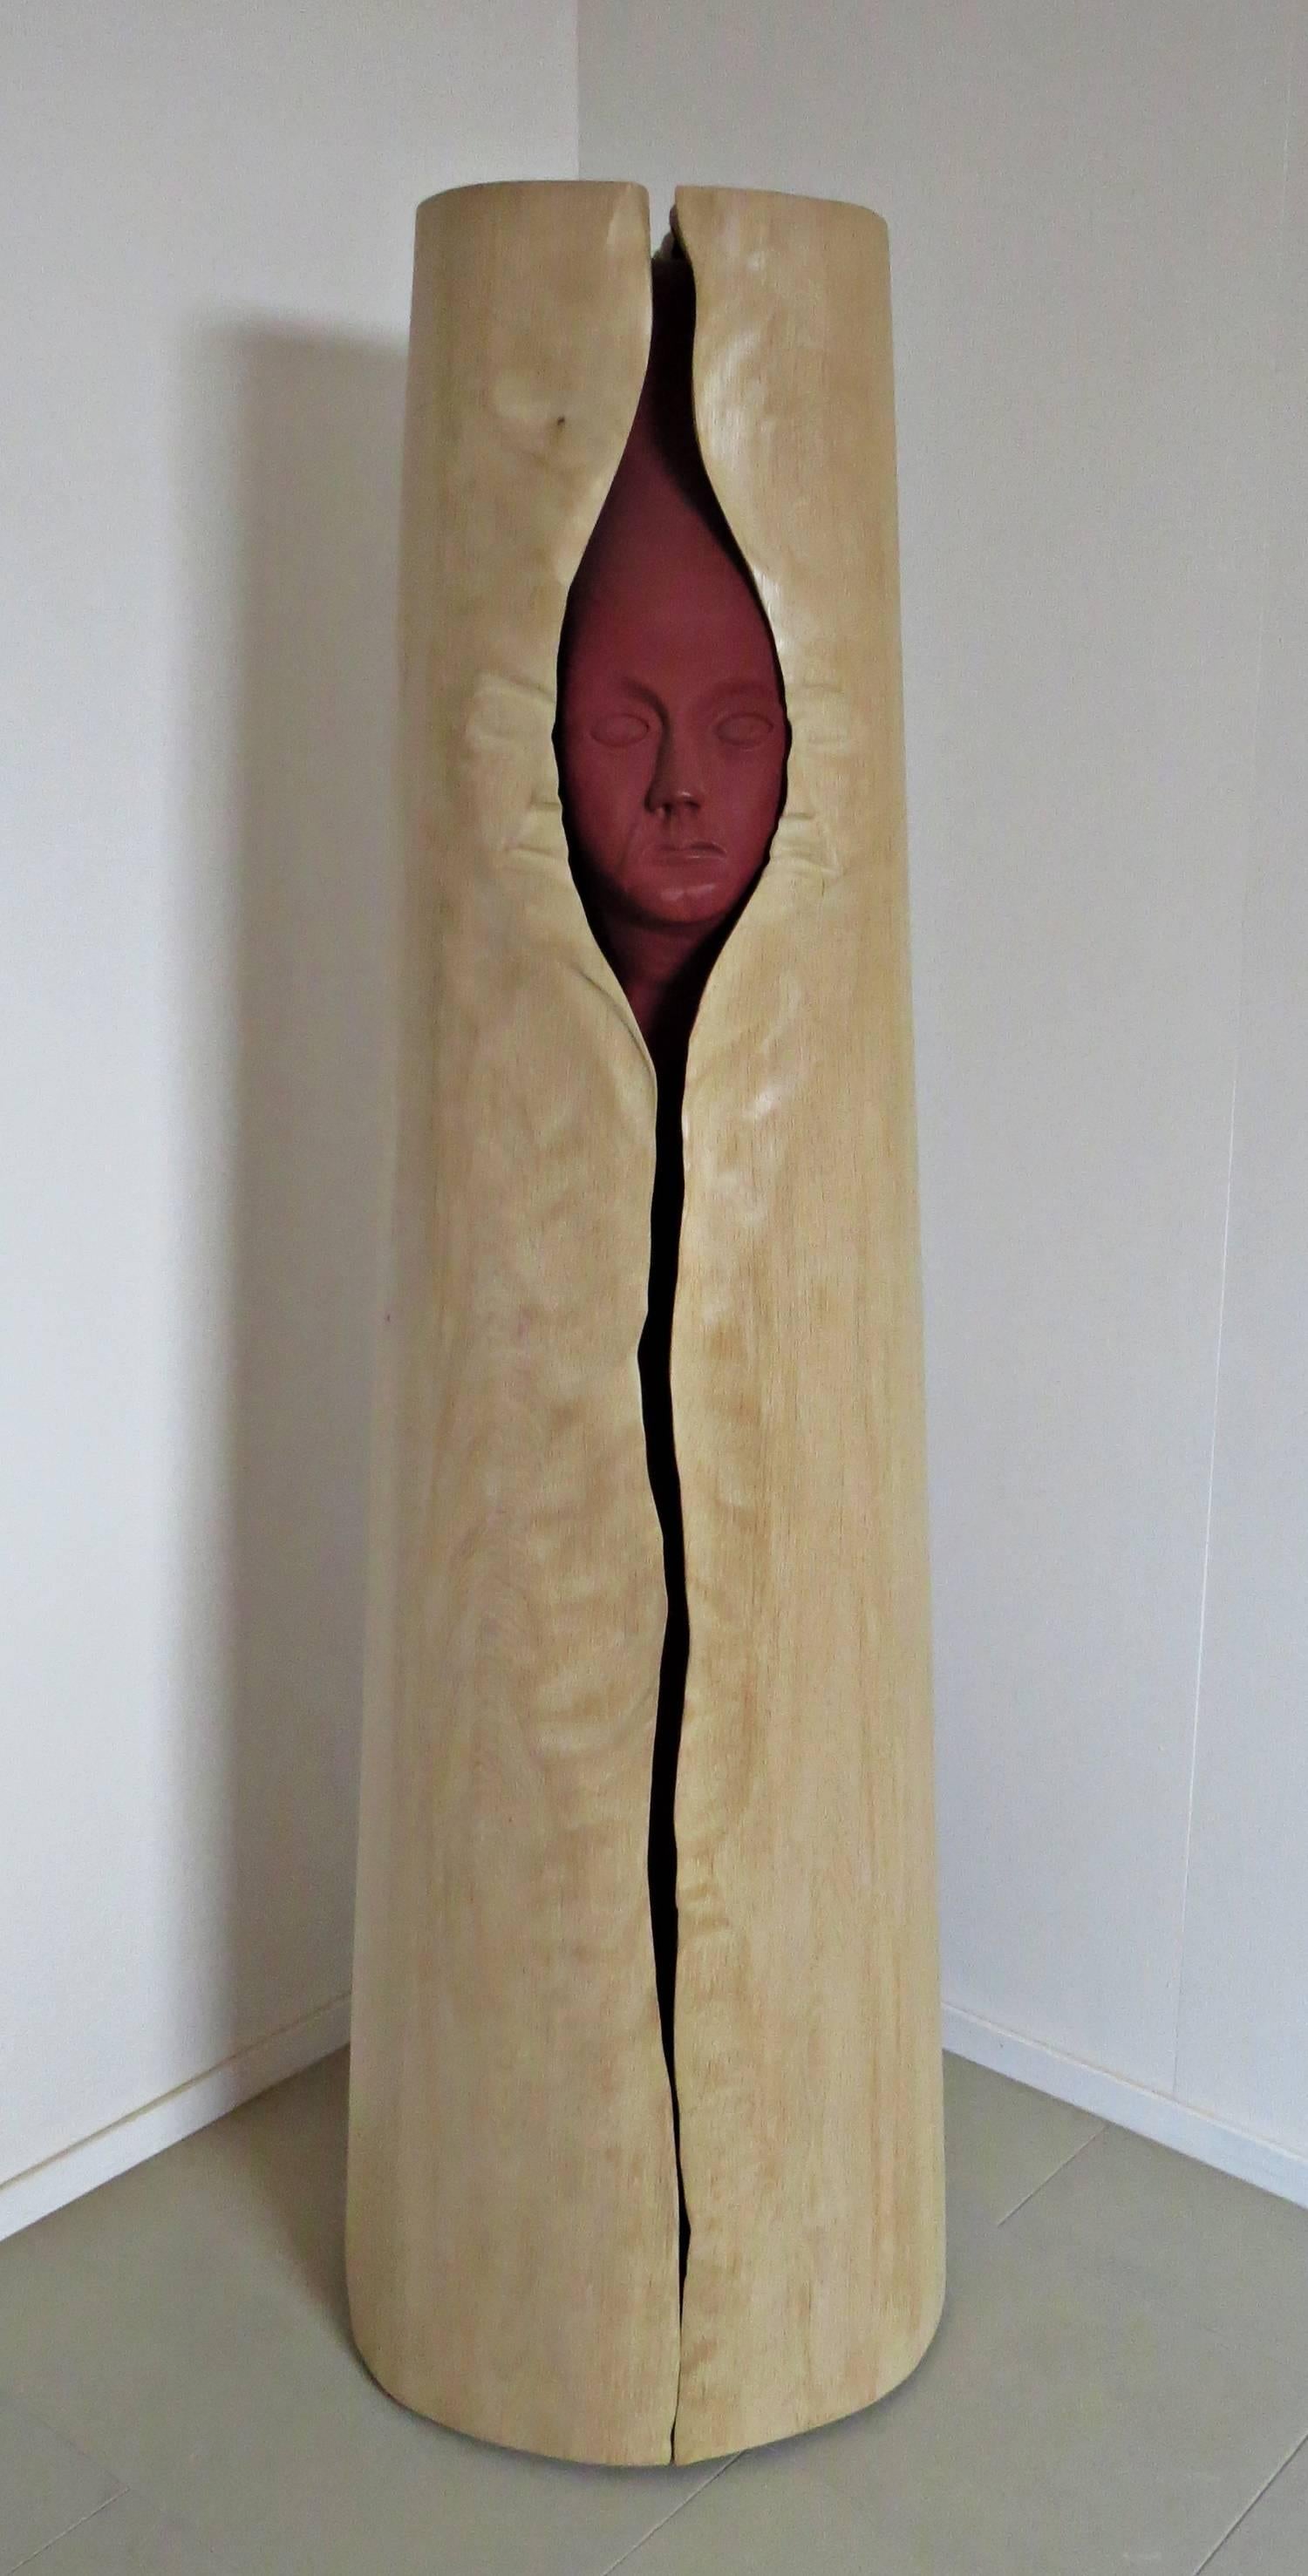 Meuble bar, mobilier de collectivité du sculpteur allemand Eckehard Weimann.

comme un tronc d'arbre, divisé, dans lequel ADAM se déploie.
Sculpture sculptée avec des étagères.
Le coffre est fabriqué en chêne massif.
Charnière en bois élaborée